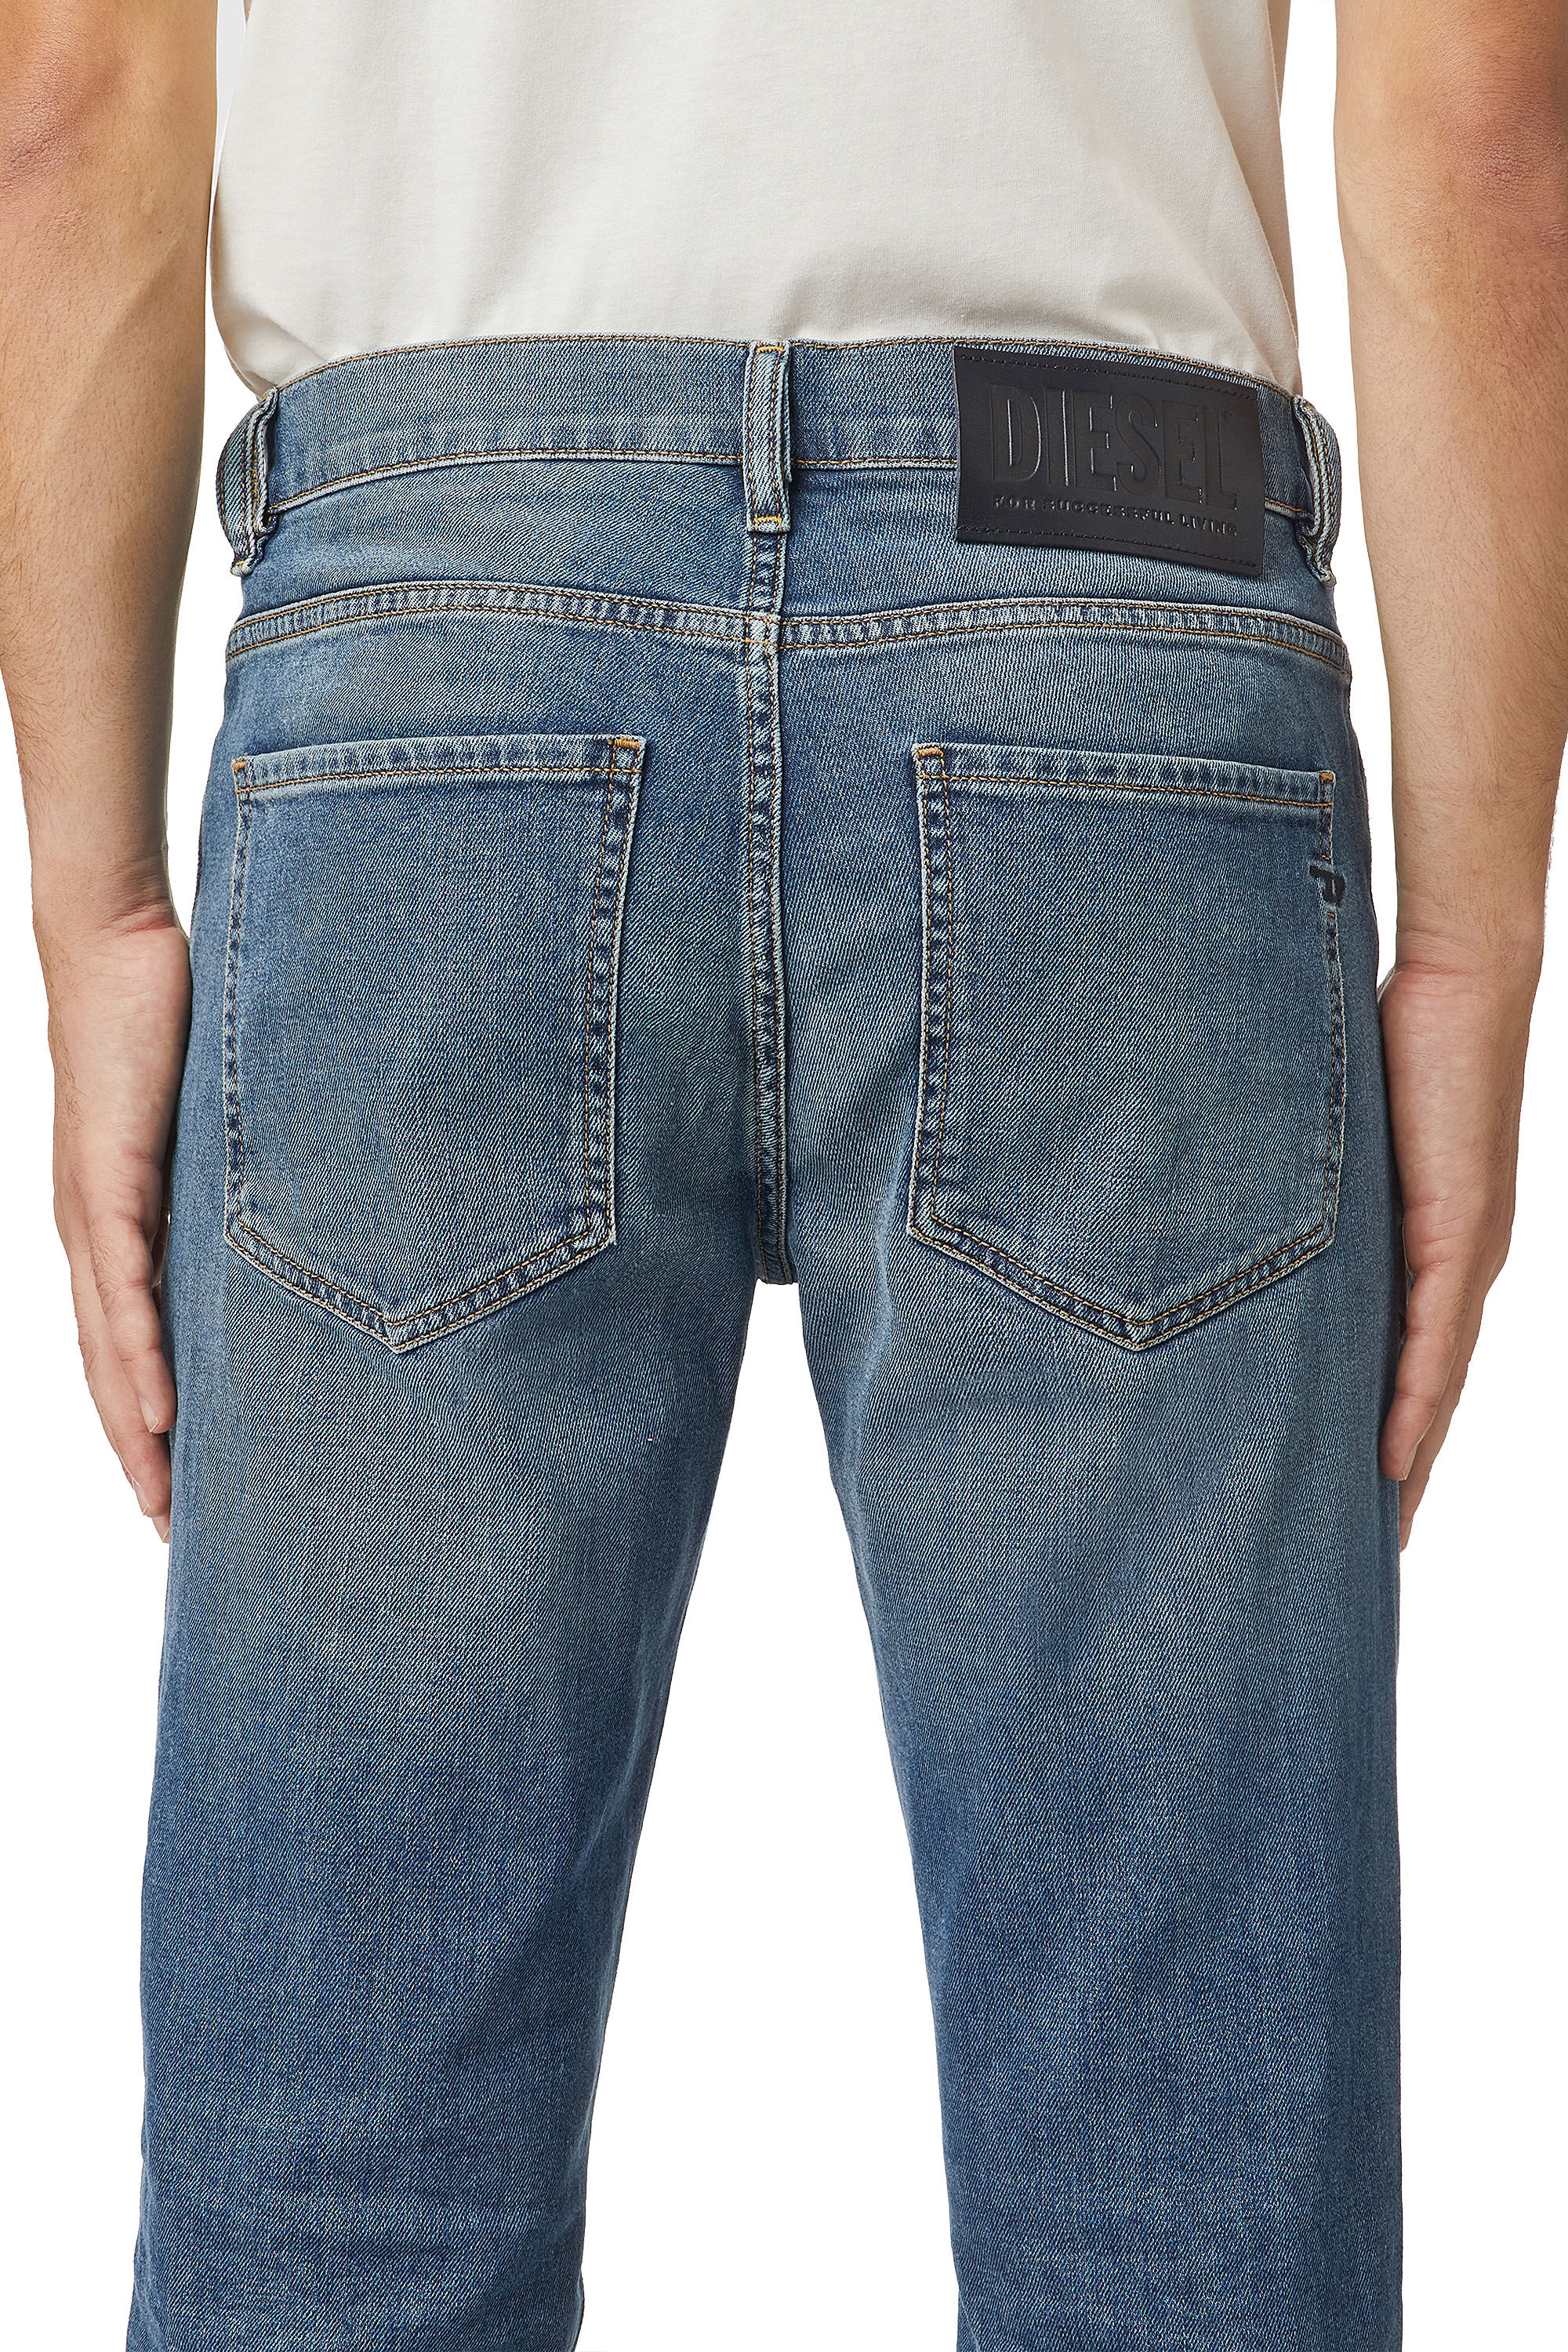 Diesel - D-Vocs 009EI Bootcut Jeans,  - Image 6